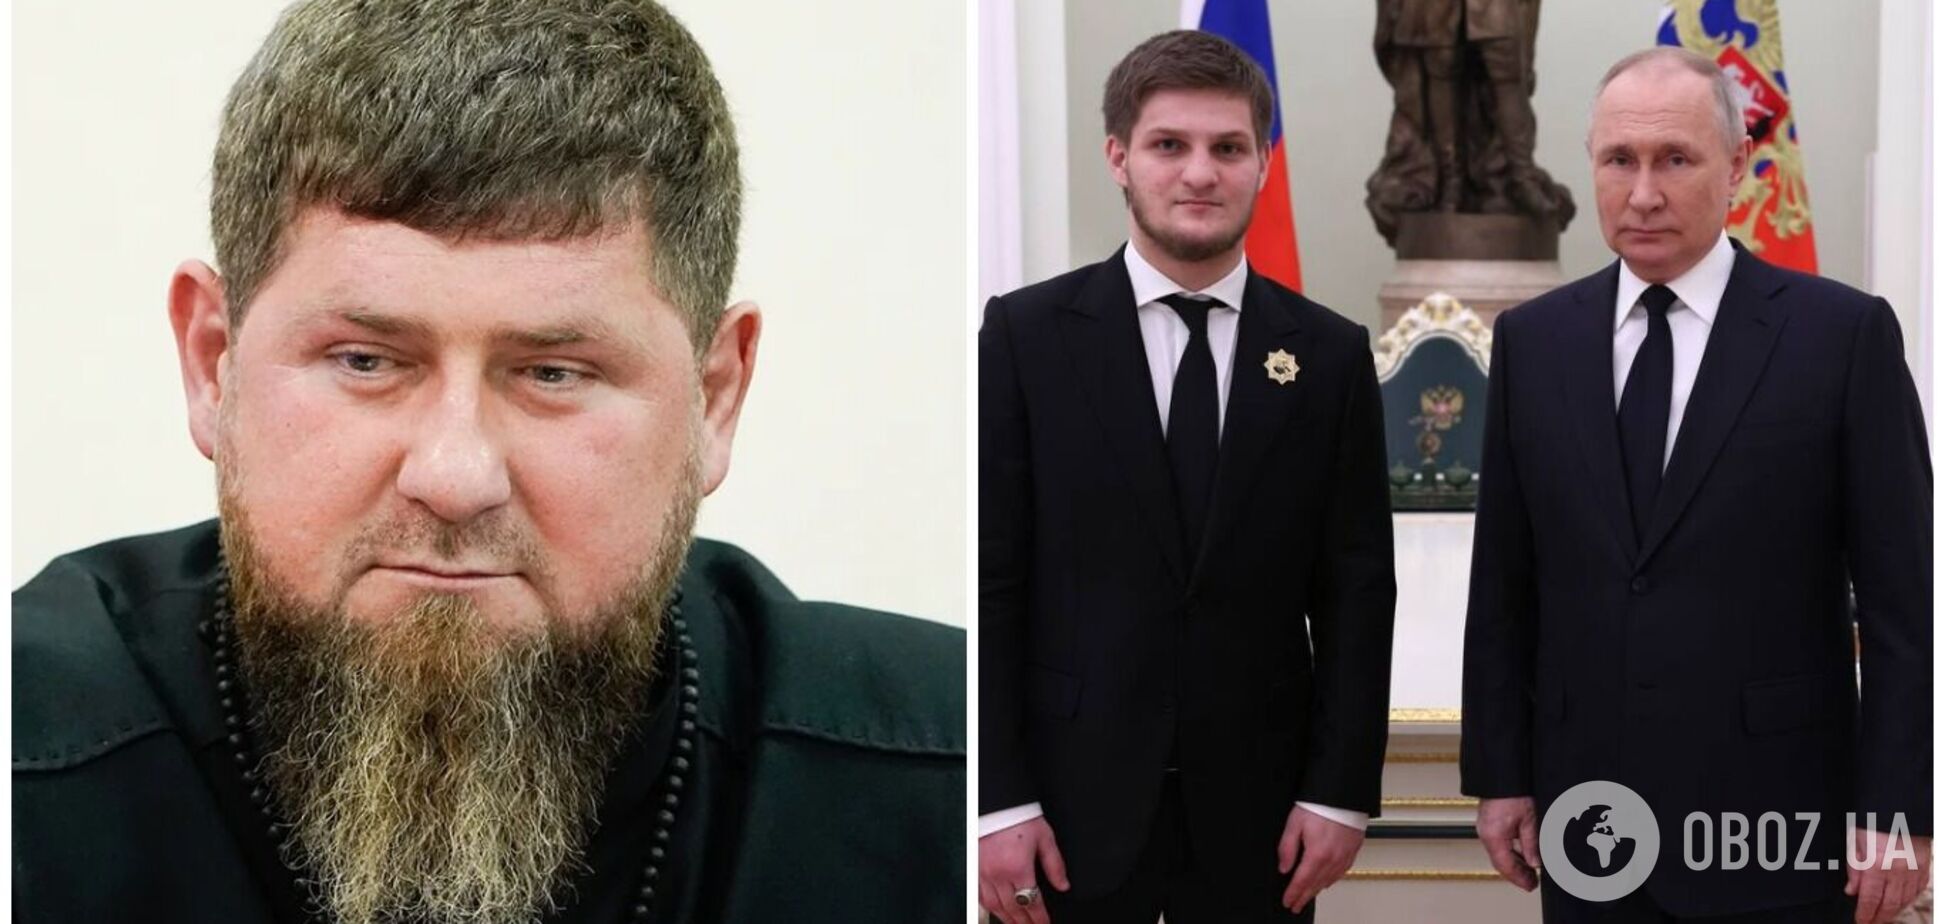 Кадыров начал презирать старшего сына после его встречи с Путиным и отстраняет от власти – ISW